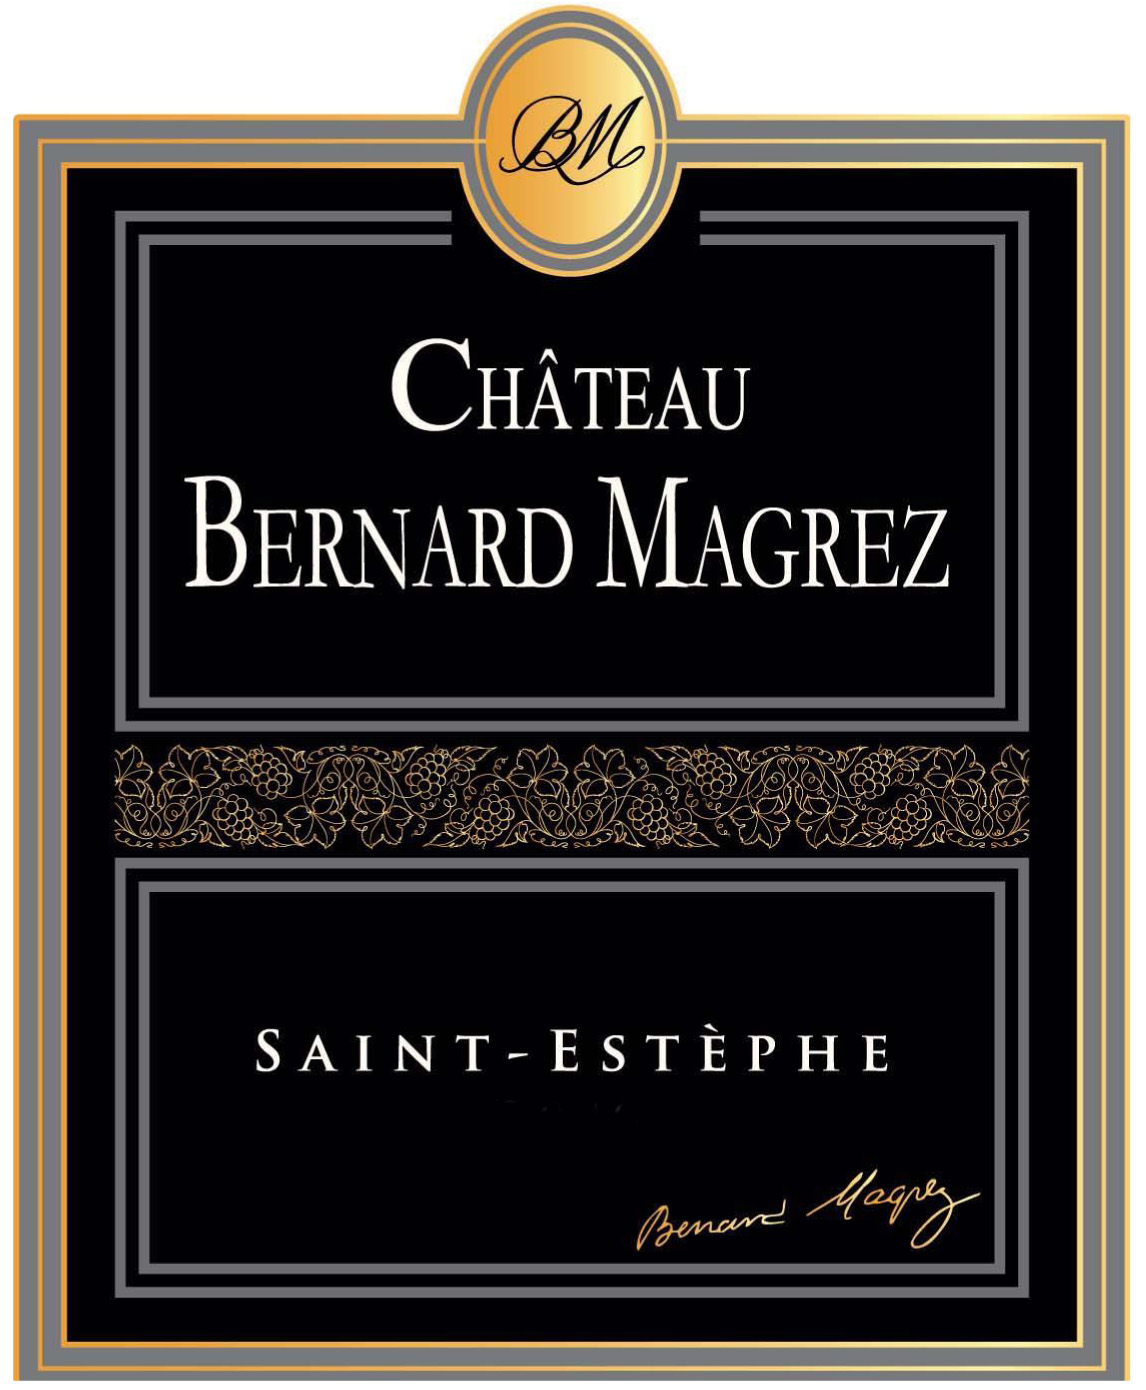 Chateau Bernard Magrez - Saint-Estephe label